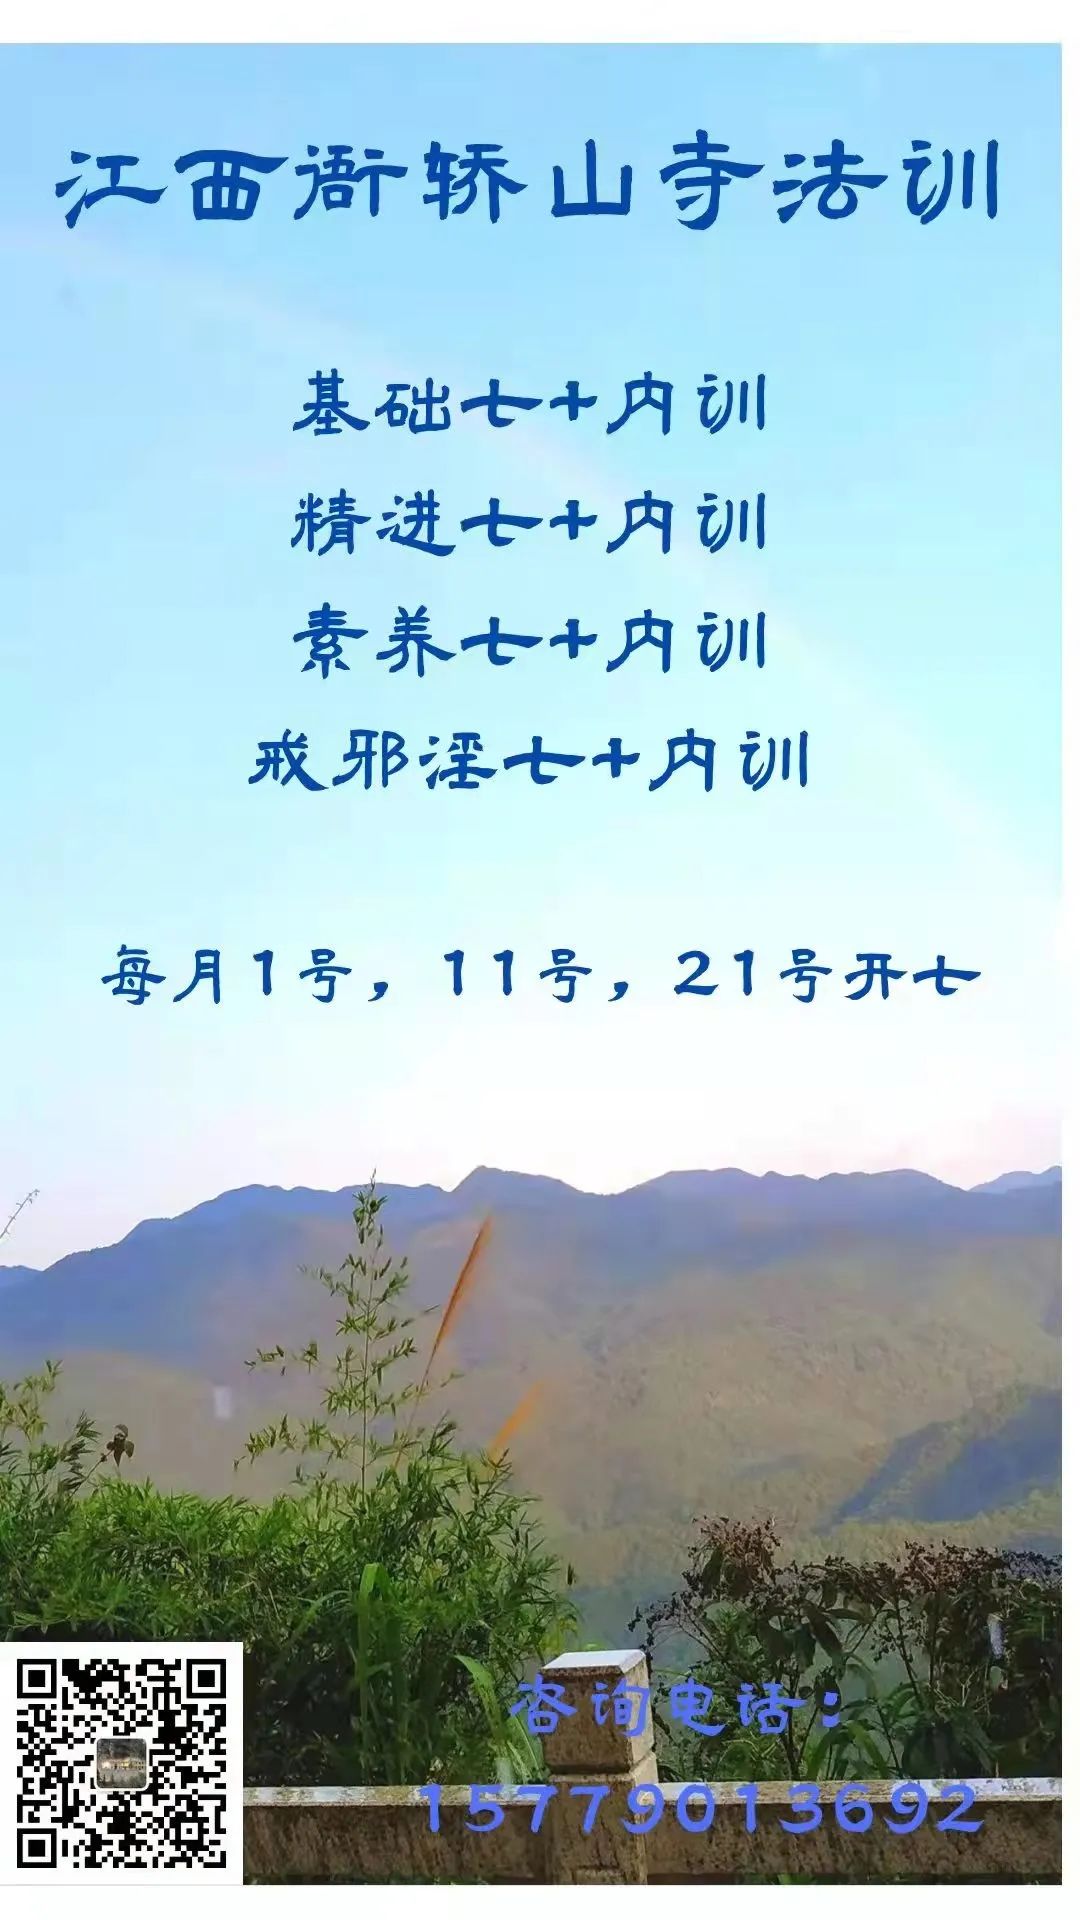 禅七 | 江西会昌衙轿山寺2021年国庆地藏禅七活动